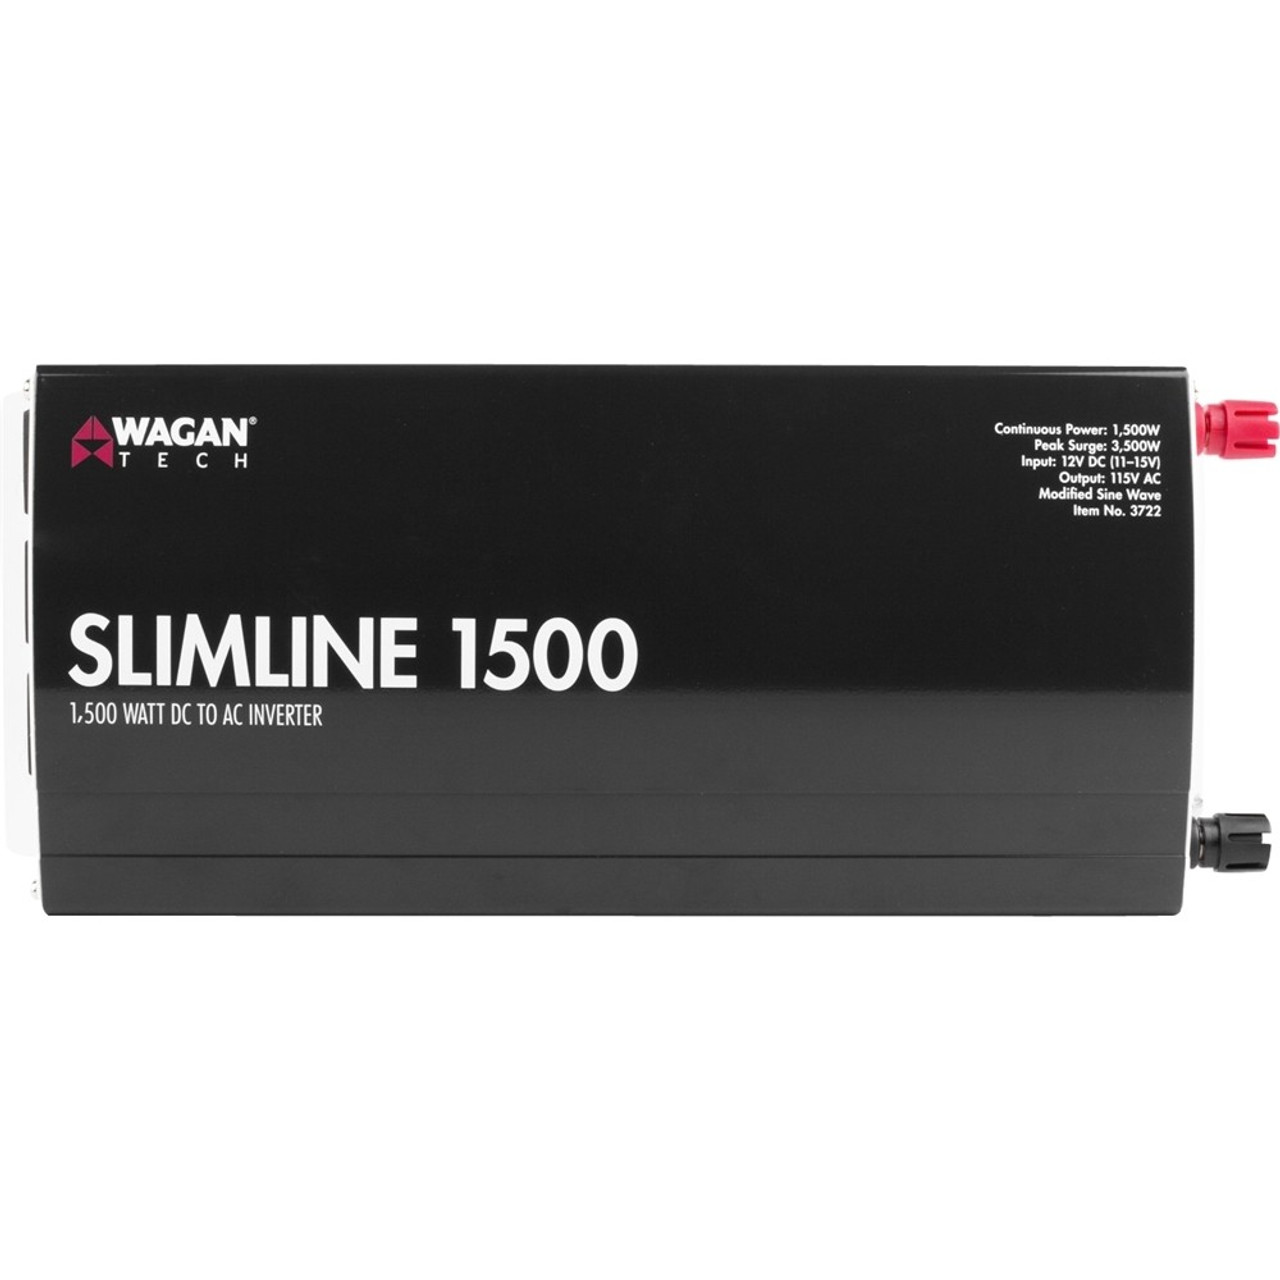 Wagan - Slimline 1500W Power Inverter - Black